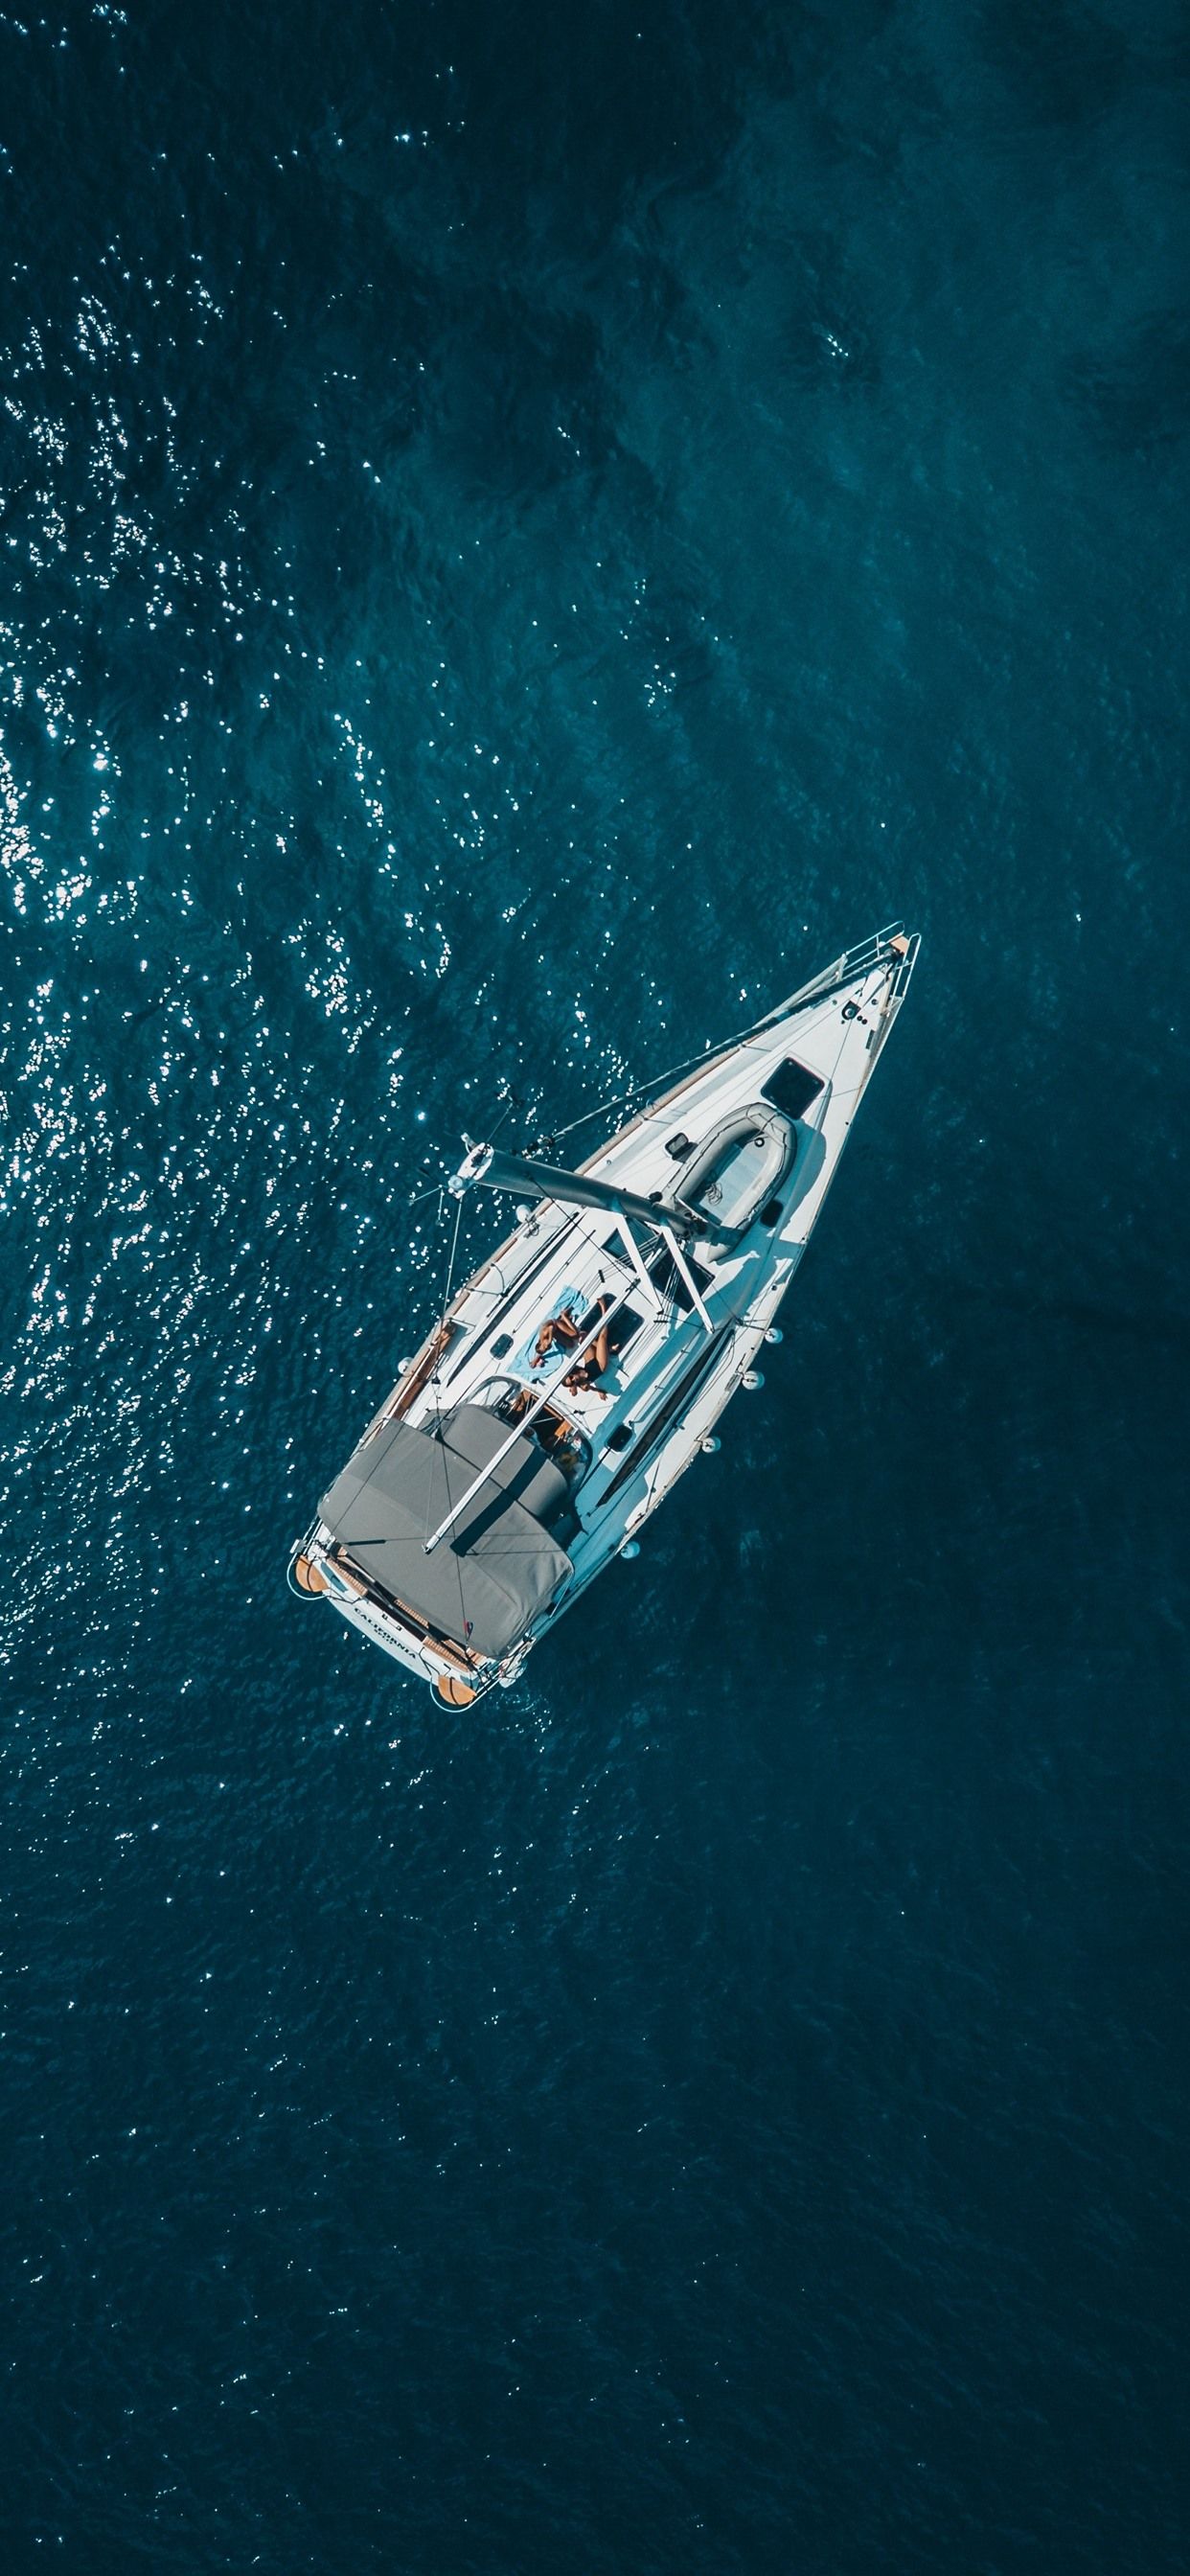 عکس قایق تفریحی زیبا و لوکس سفید از بالا به عنوان والپیپر IOS